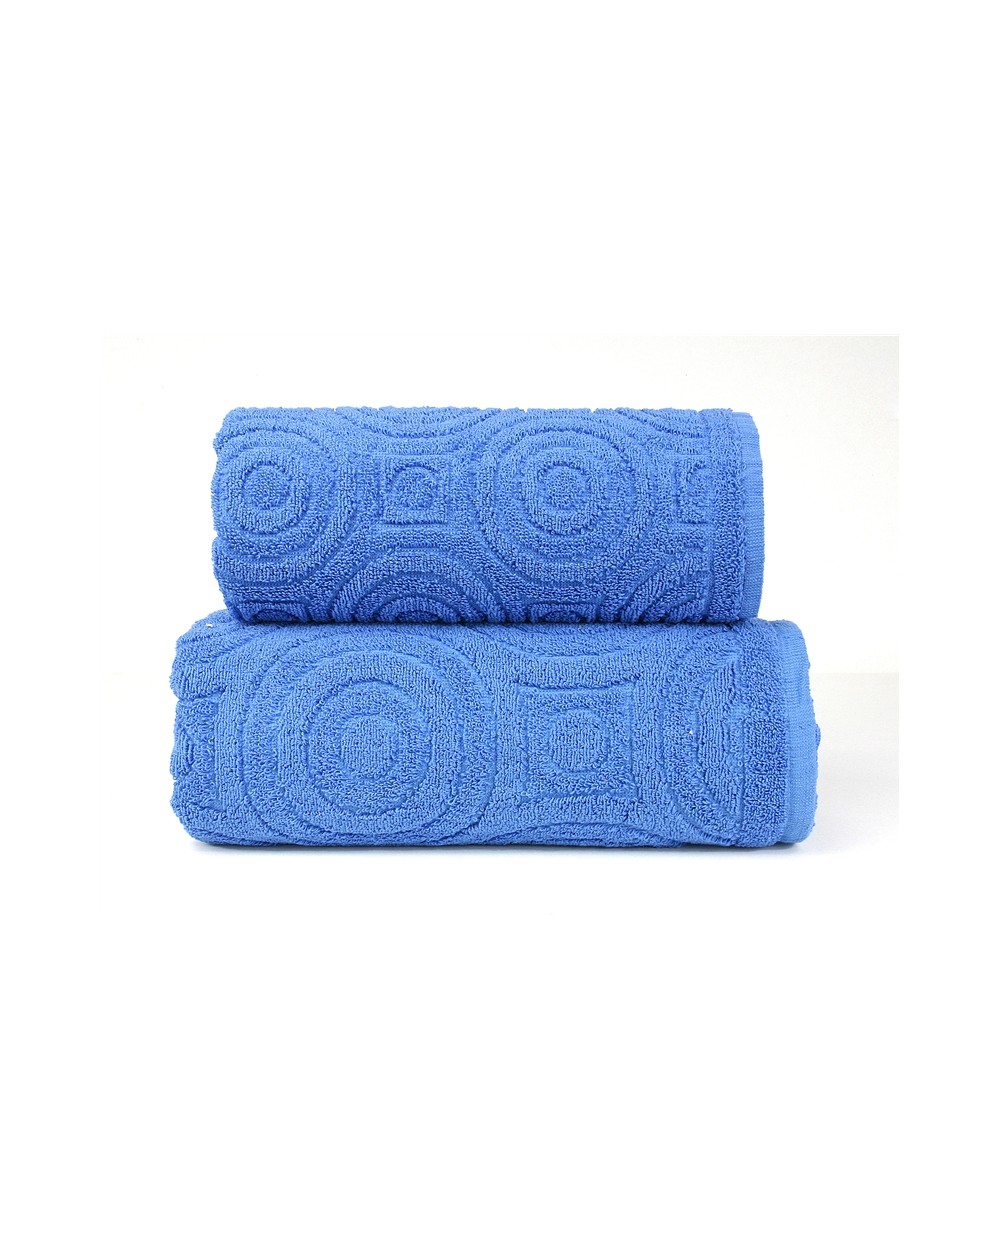 Ręcznik Emma 2 bawełna 70x140 niebieski